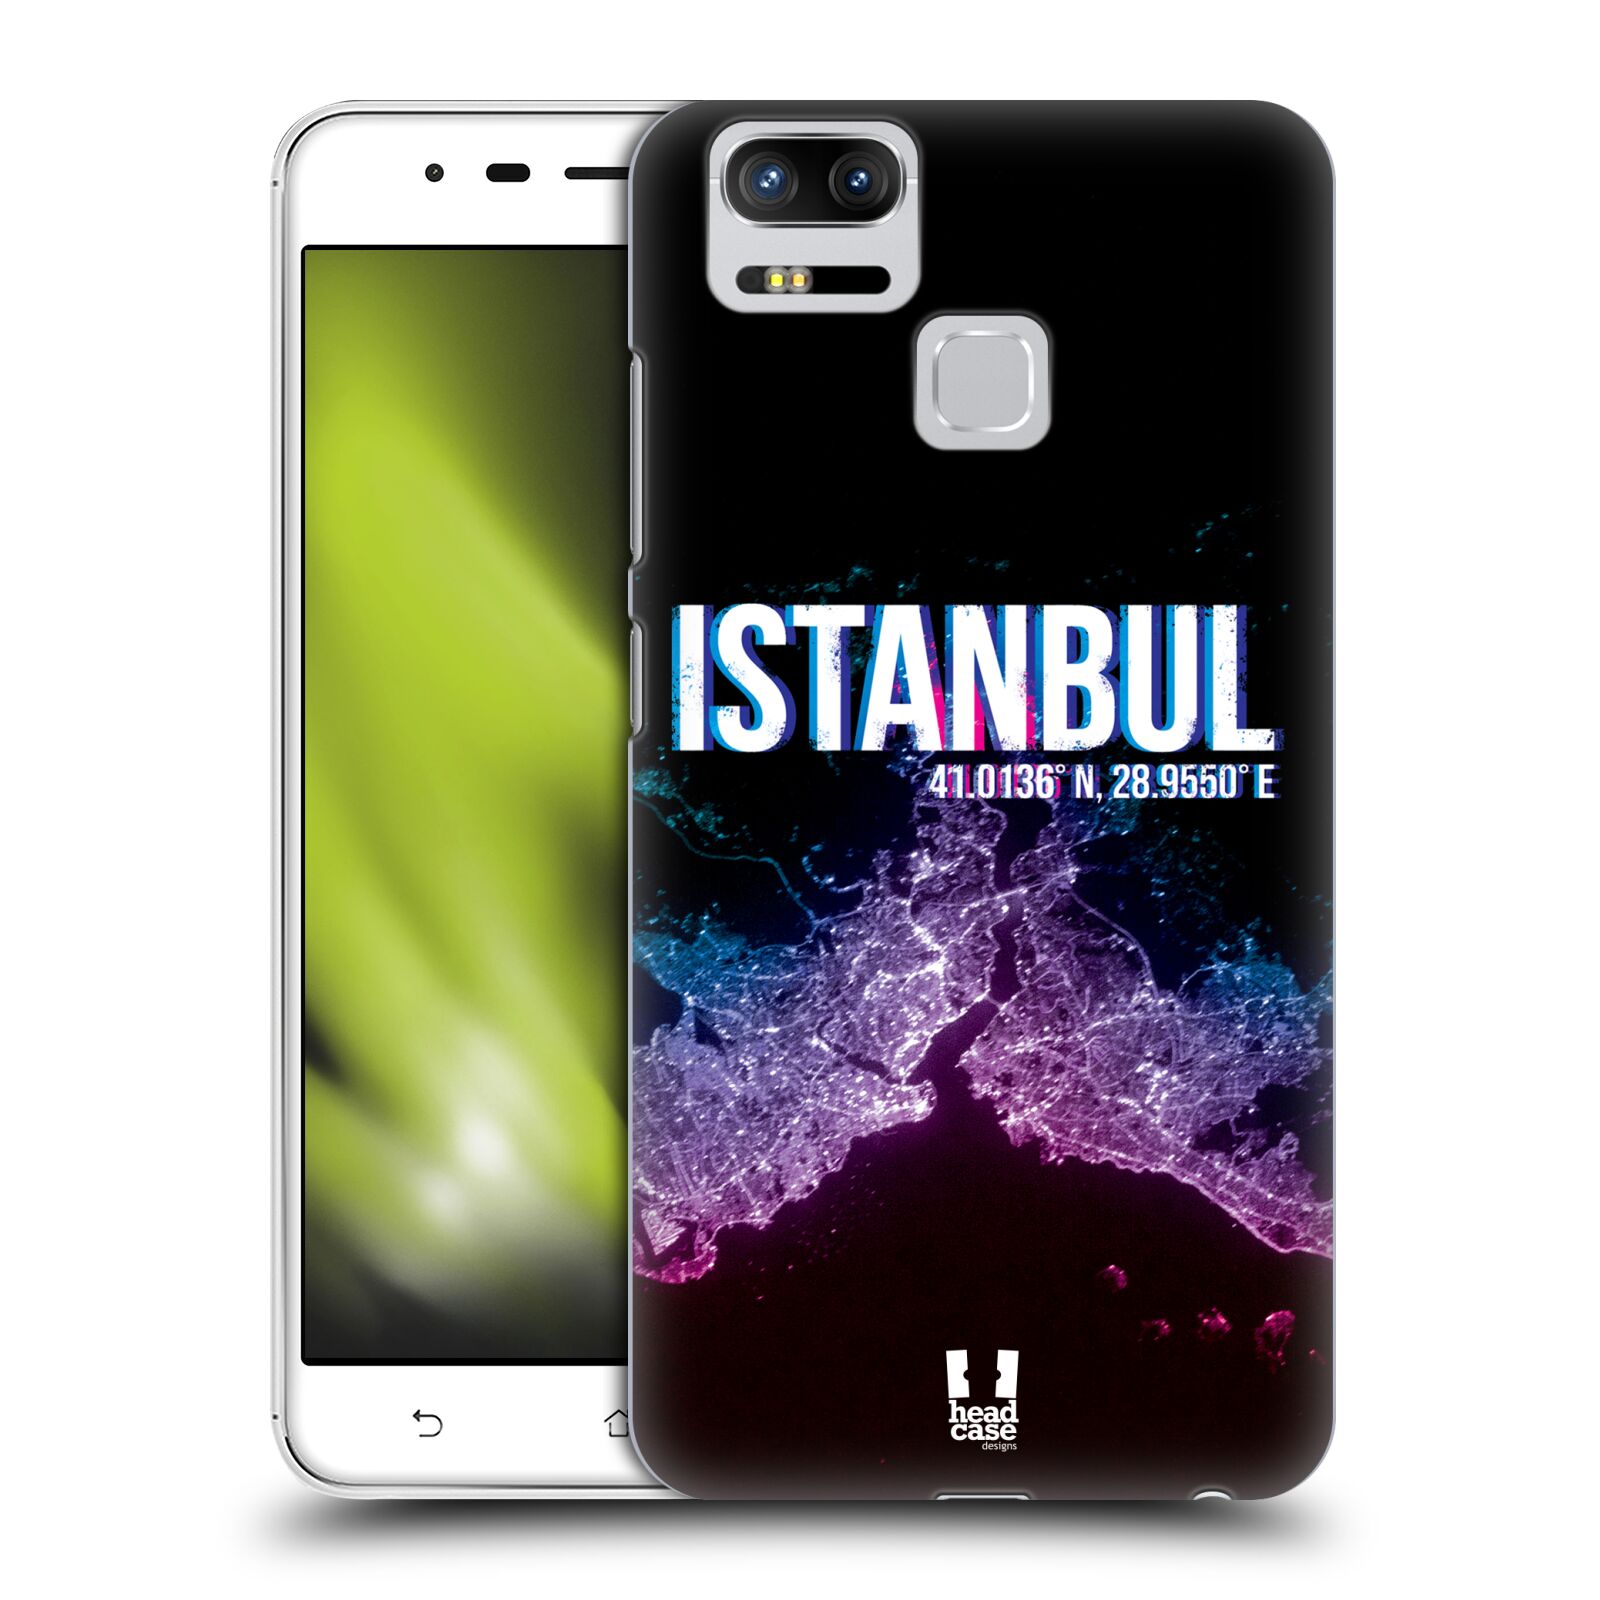 HEAD CASE plastový obal na mobil Asus Zenfone 3 Zoom ZE553KL vzor Světla známých měst, Satelitní snímky TURECKO, ISTANBUL